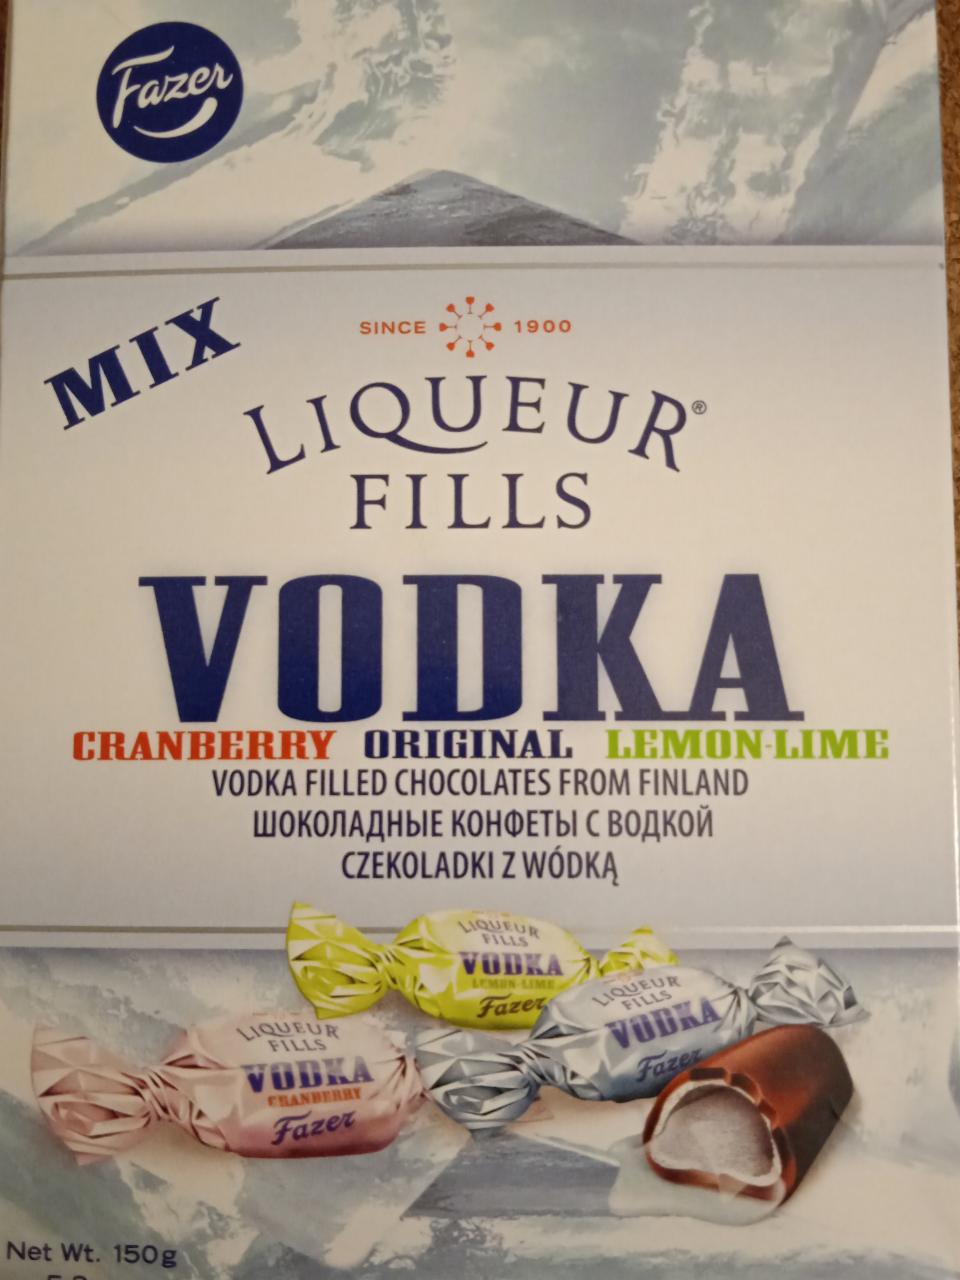 Képek - Fazer Liqueur Fills Vodka csokoládé alkoholos töltelékkel 150 g